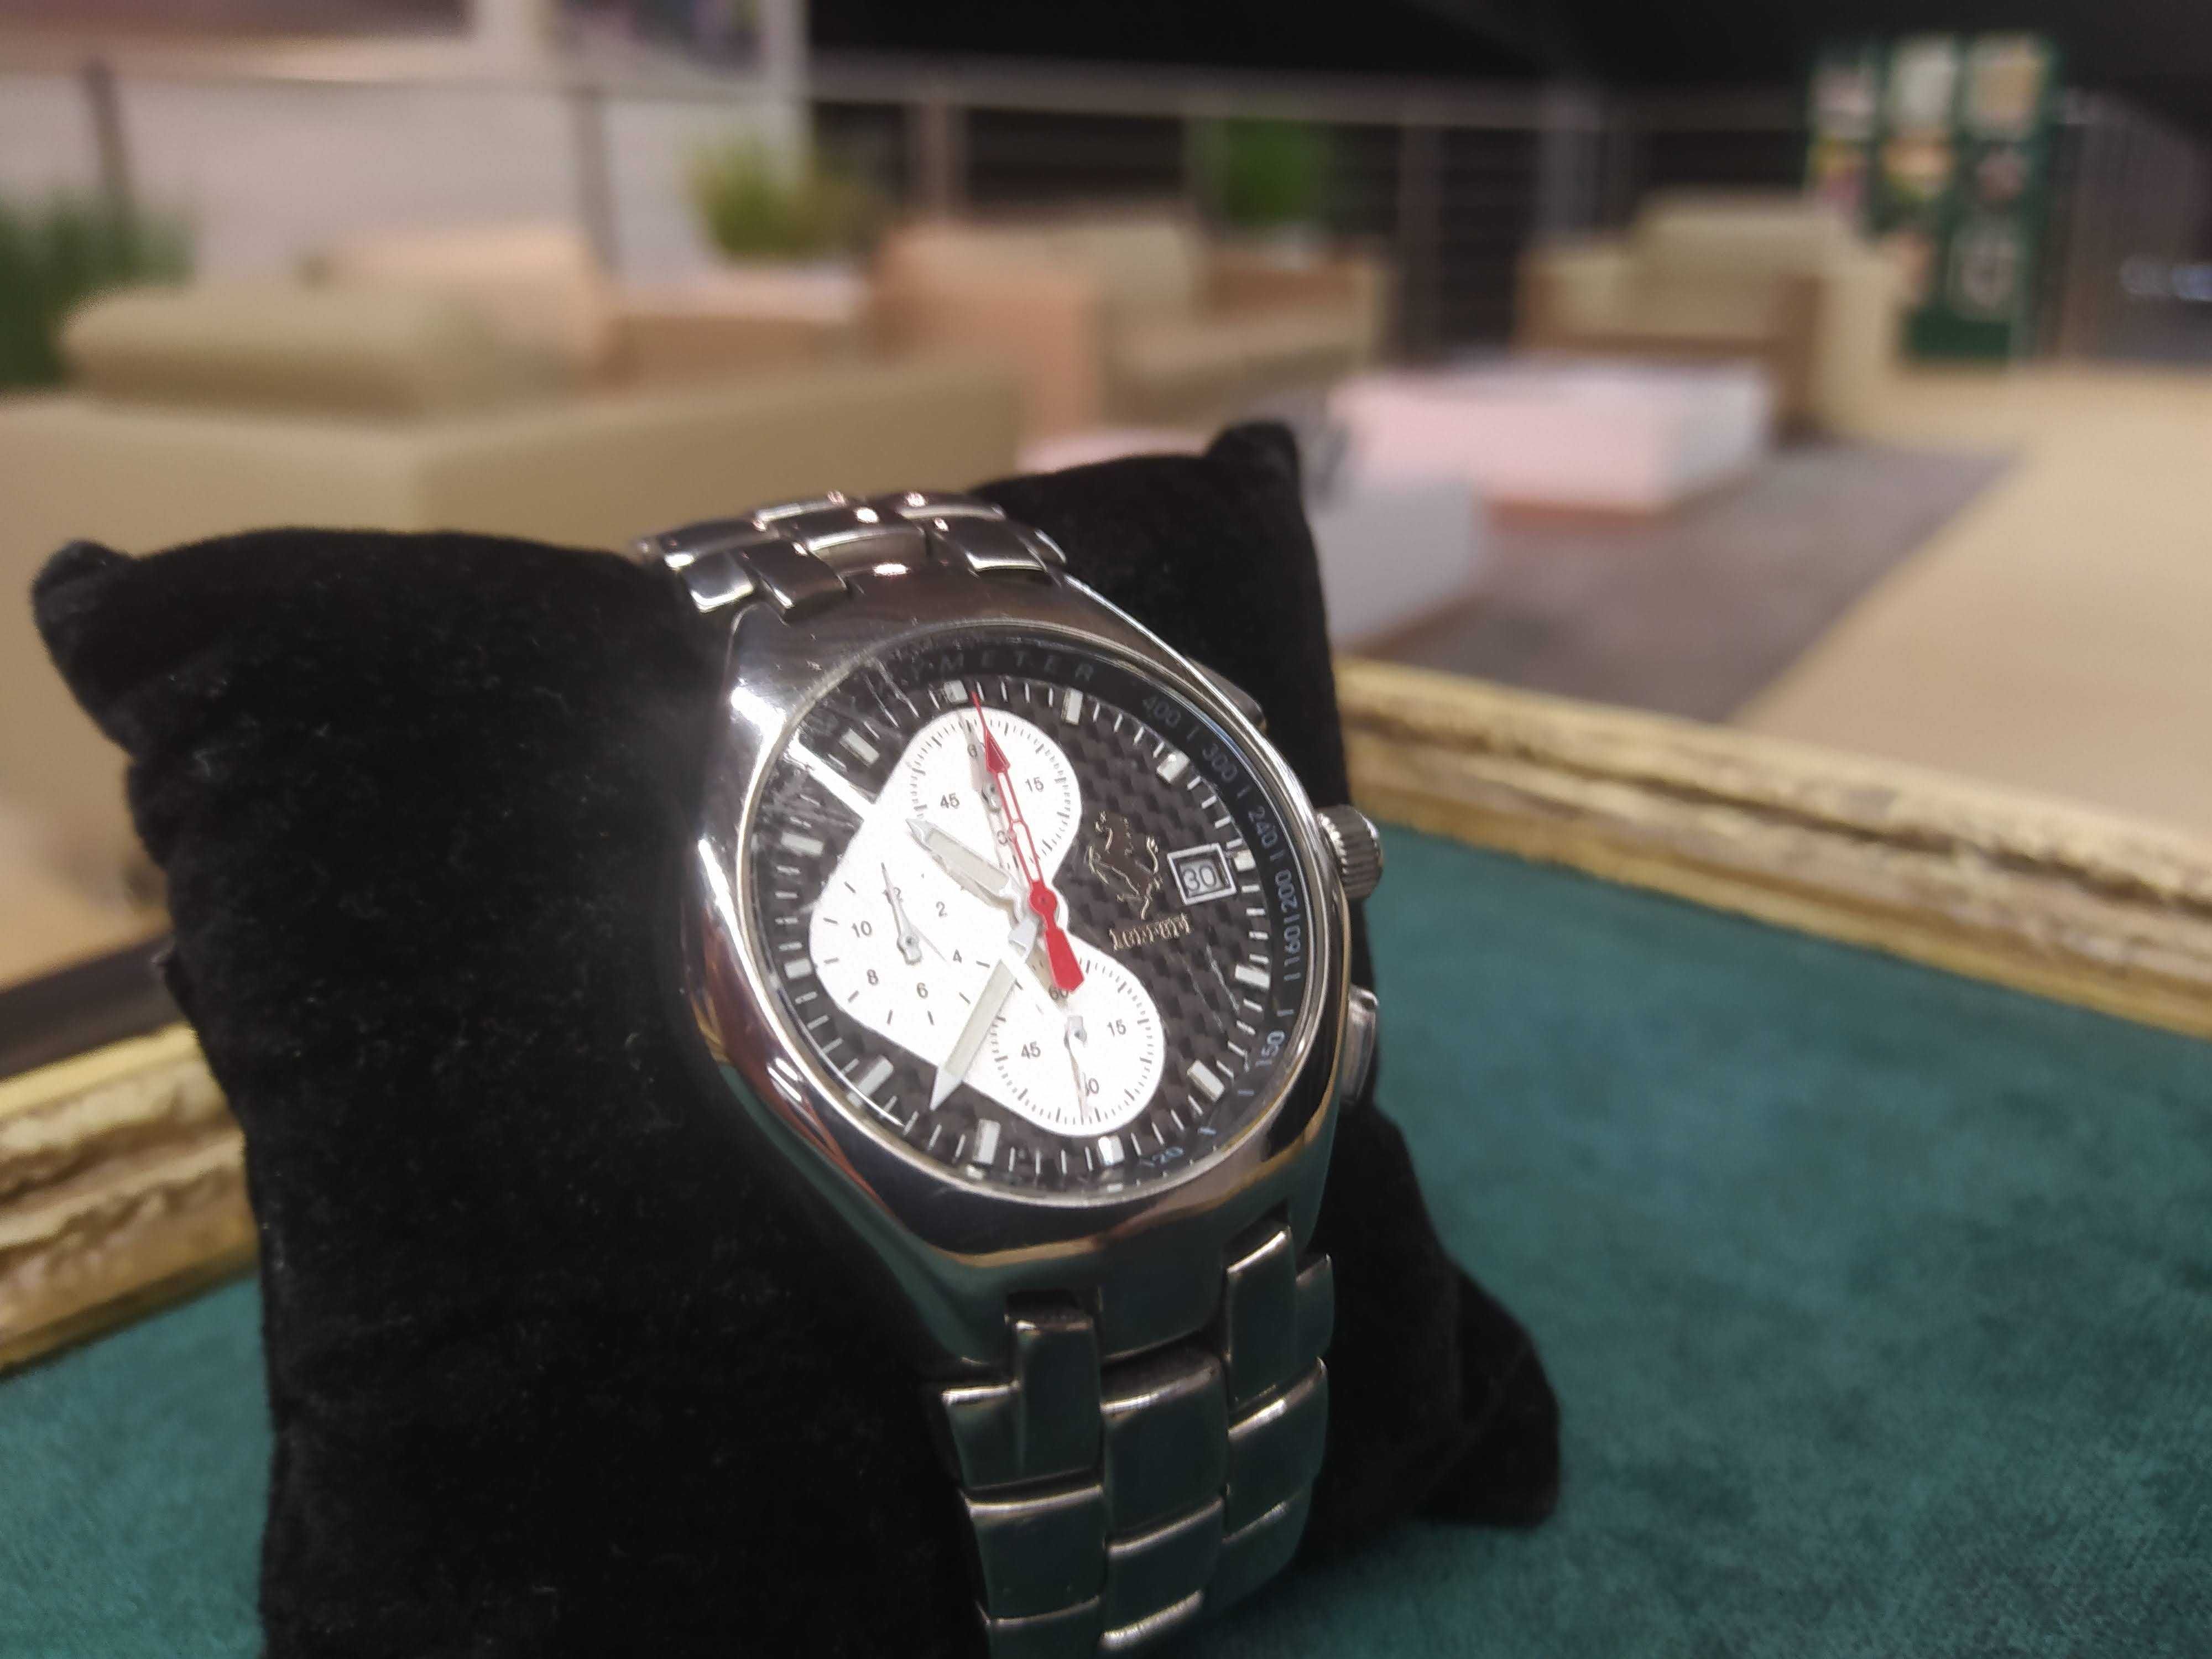 Oryginalny Zegarek Ferrari Chronograf !! Sportowy !! Rzadki Rarytas